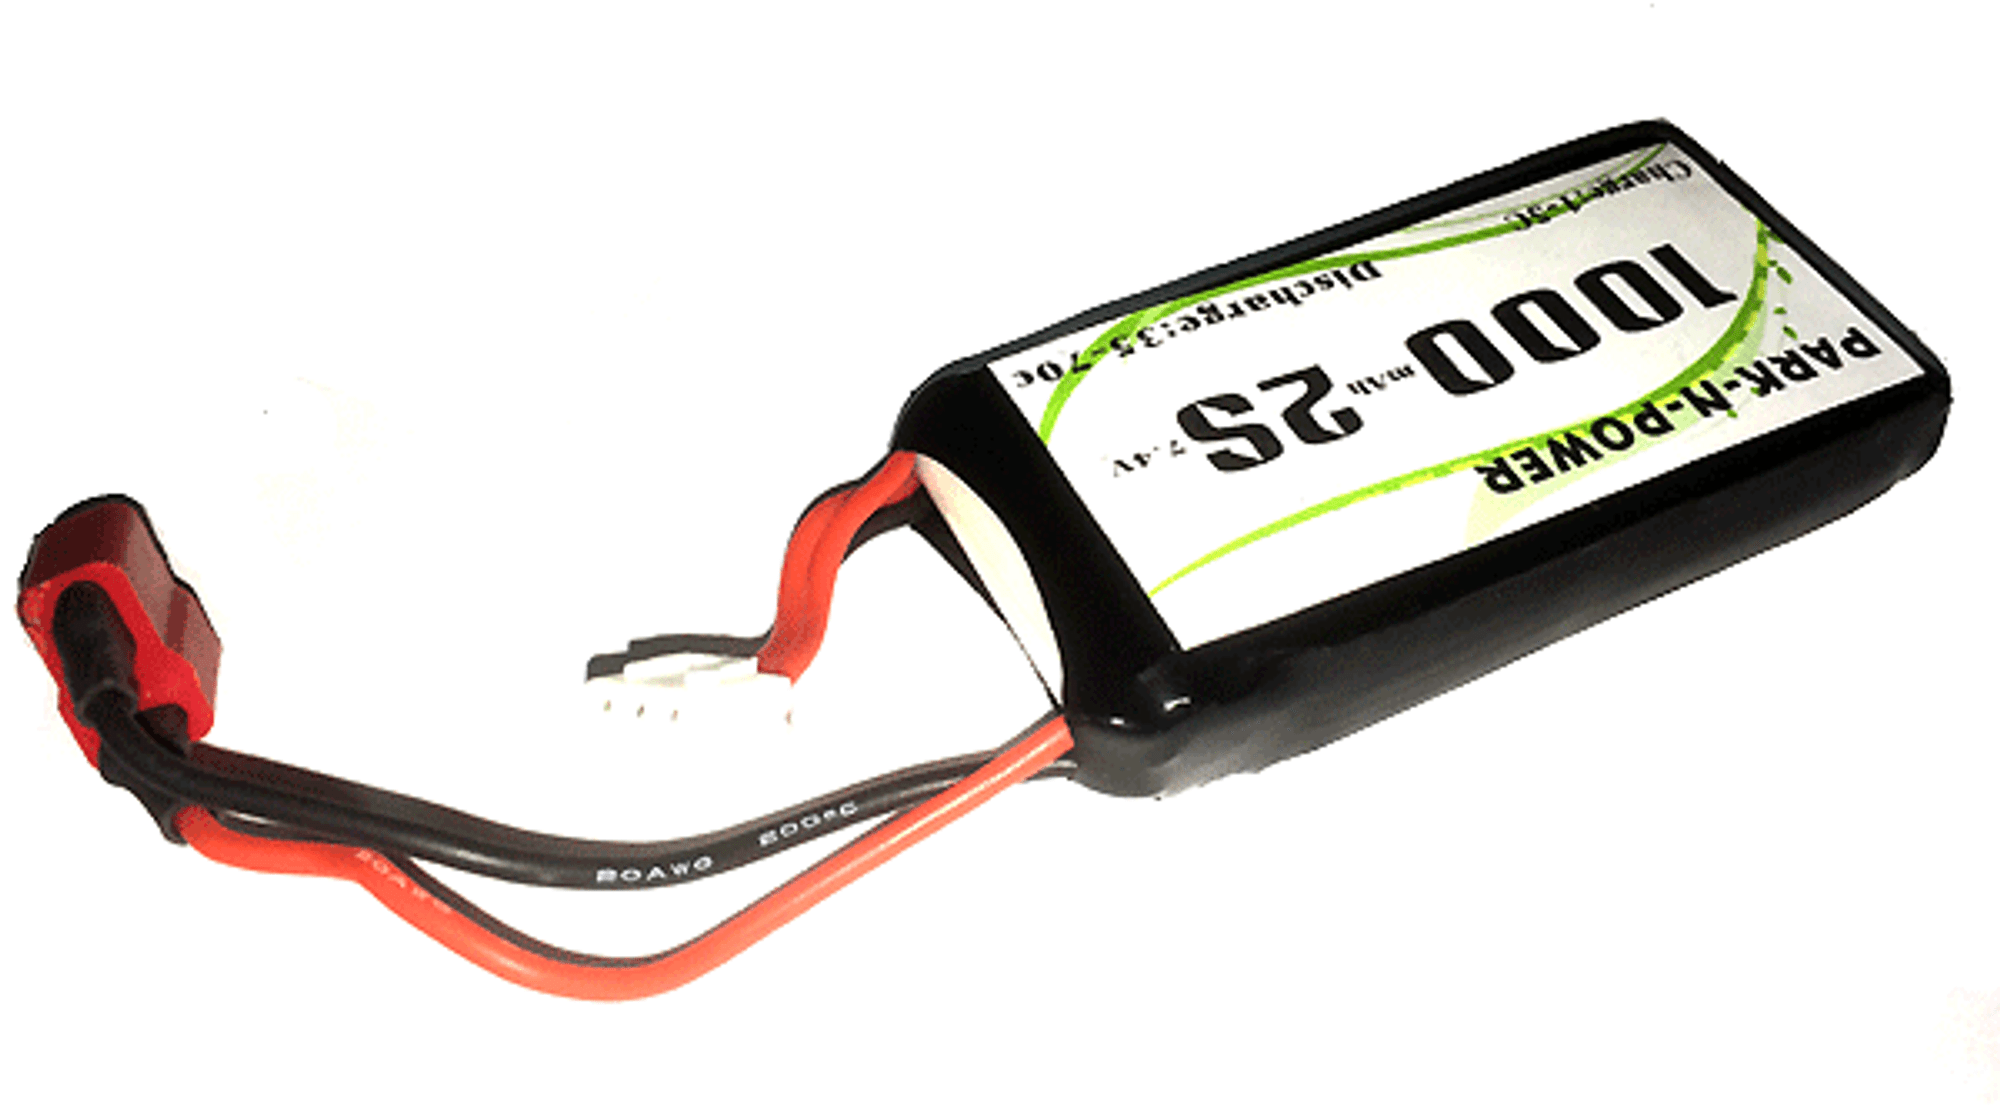 Custom 7.4V Lipo Battery for Sterling/Honey Badger - Dean Connect